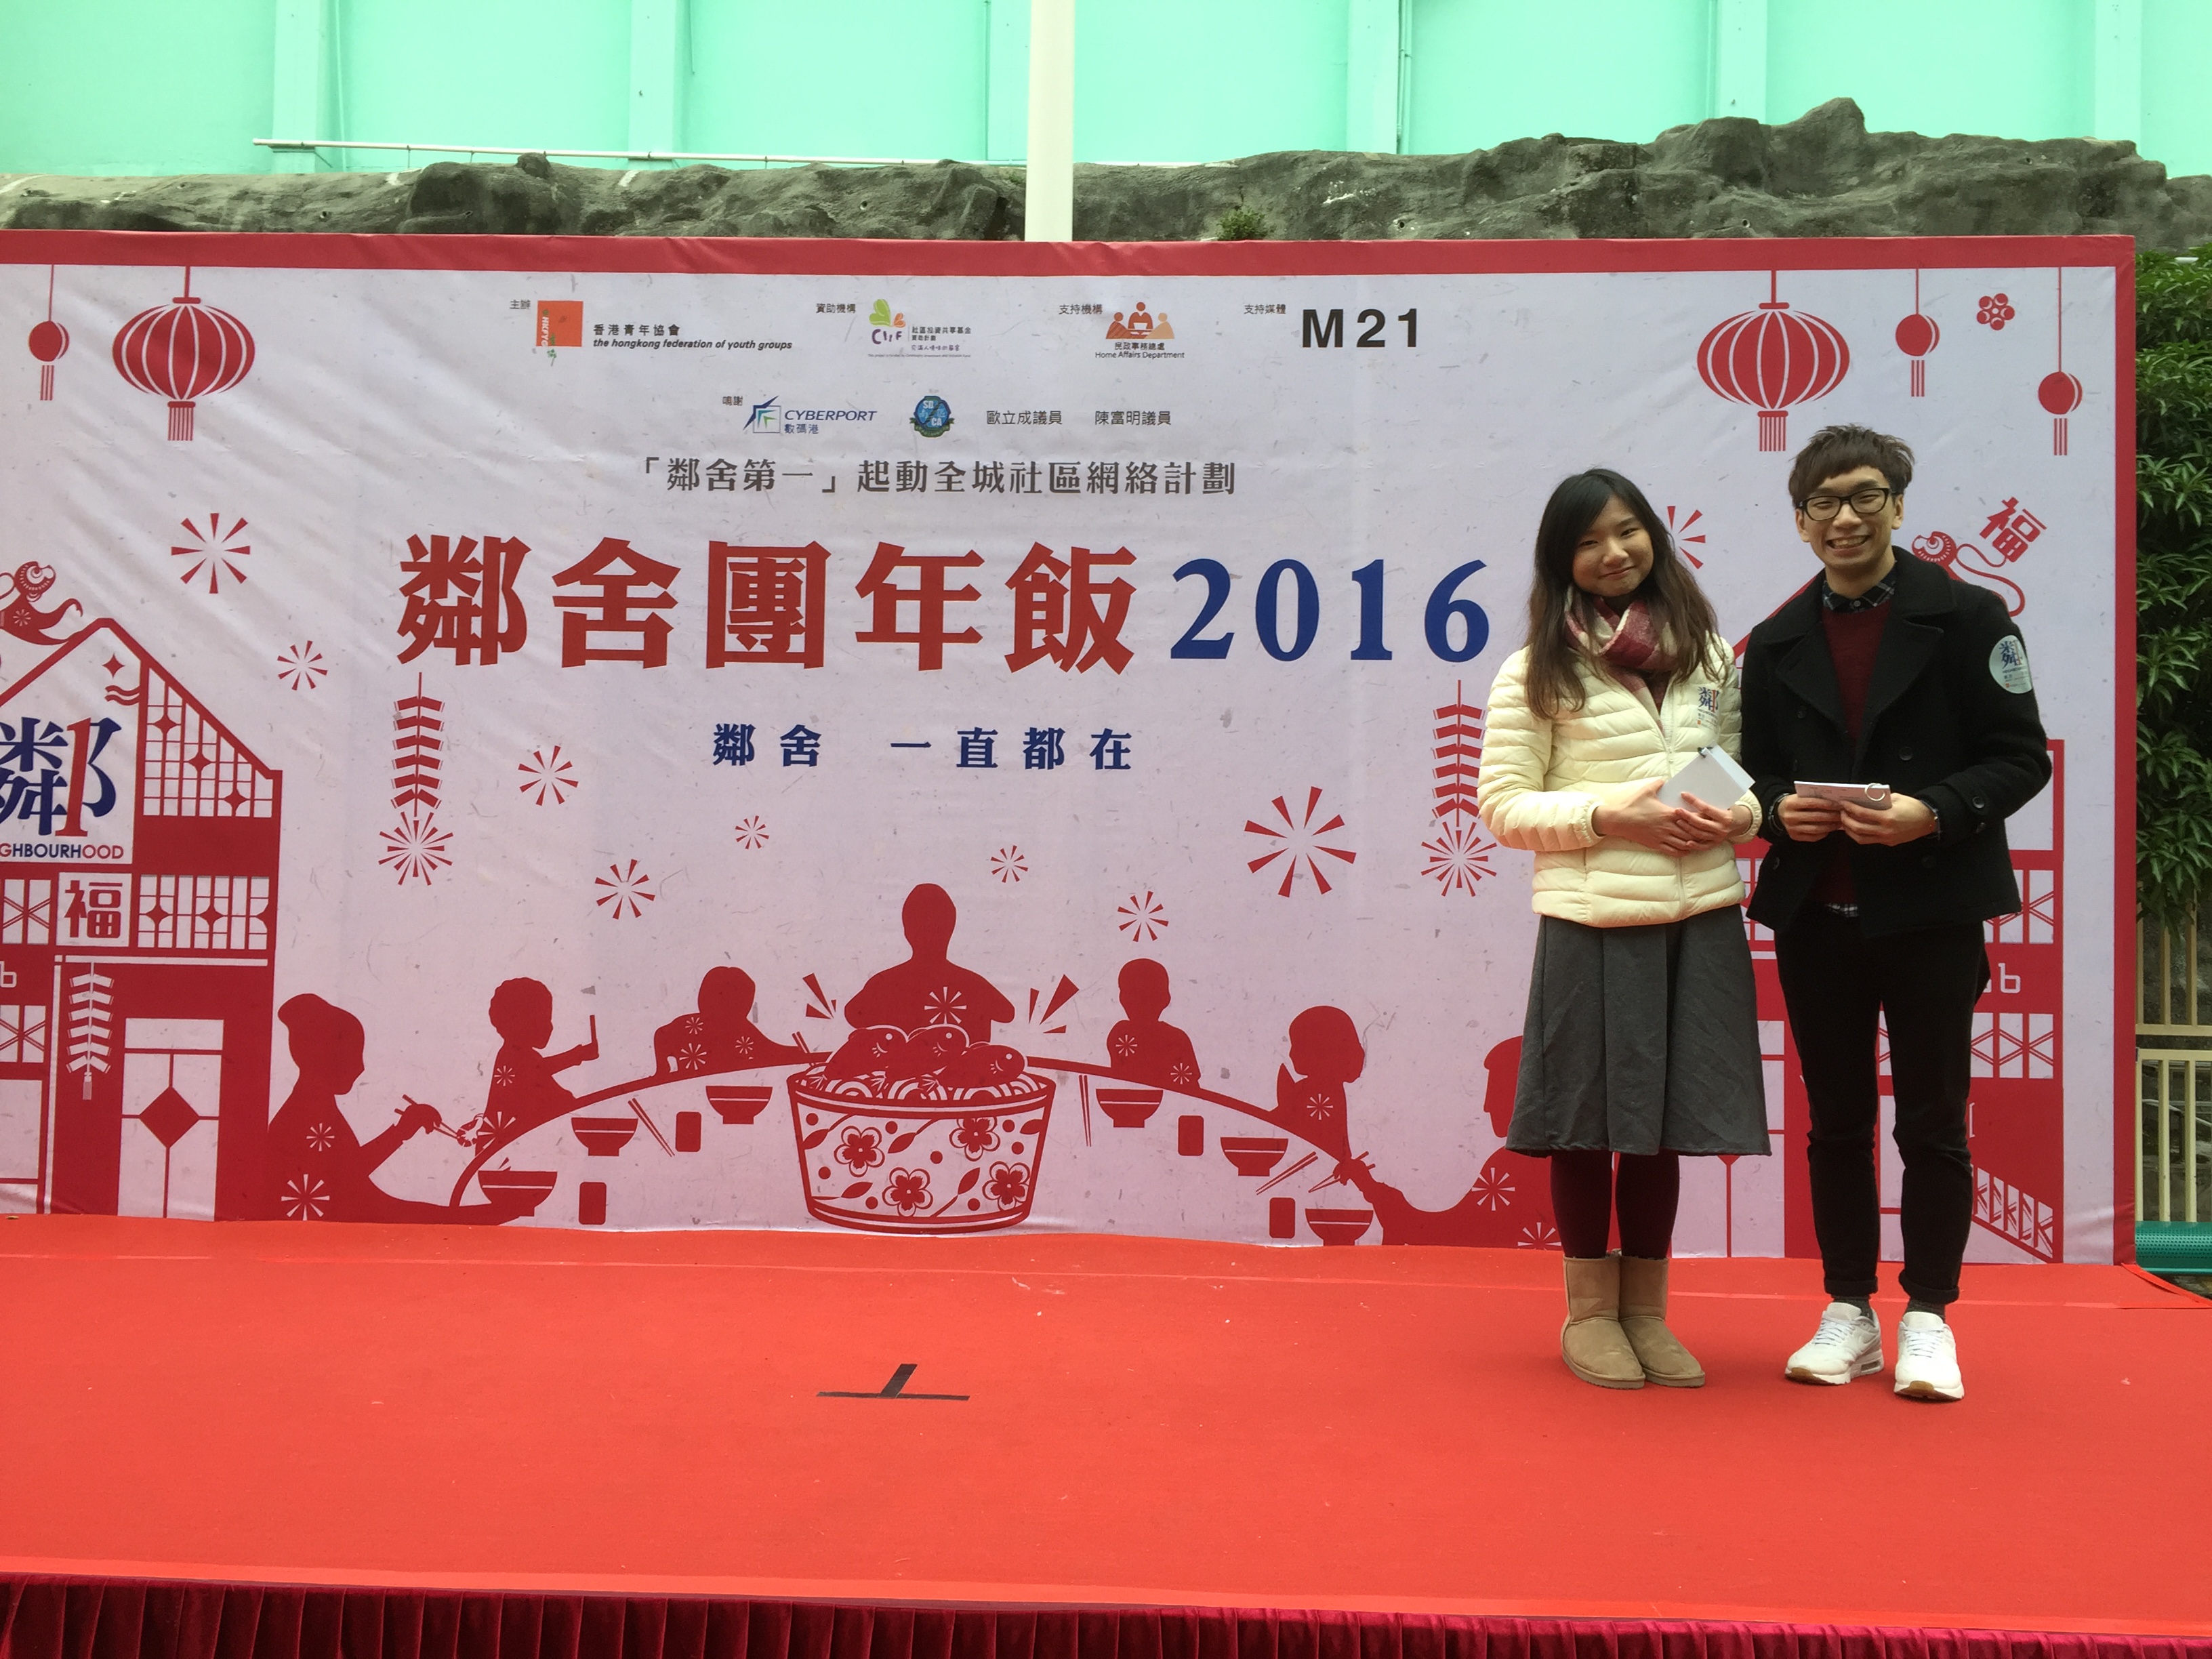 細眼之司儀主持紀錄: 「活動主持」香港青年協會M21媒體空間鄰舍團年飯2016